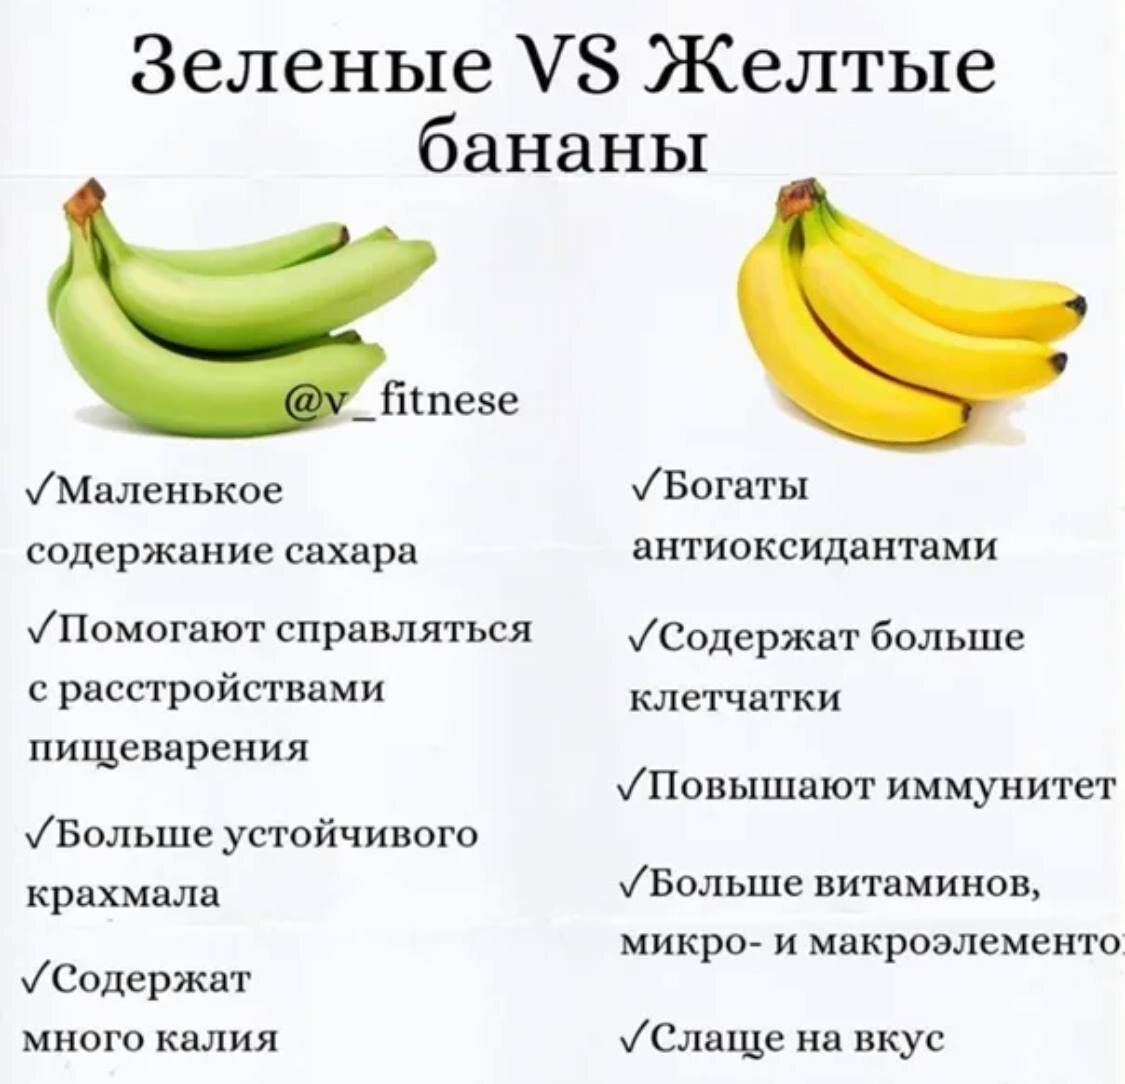 Десертный банан польза